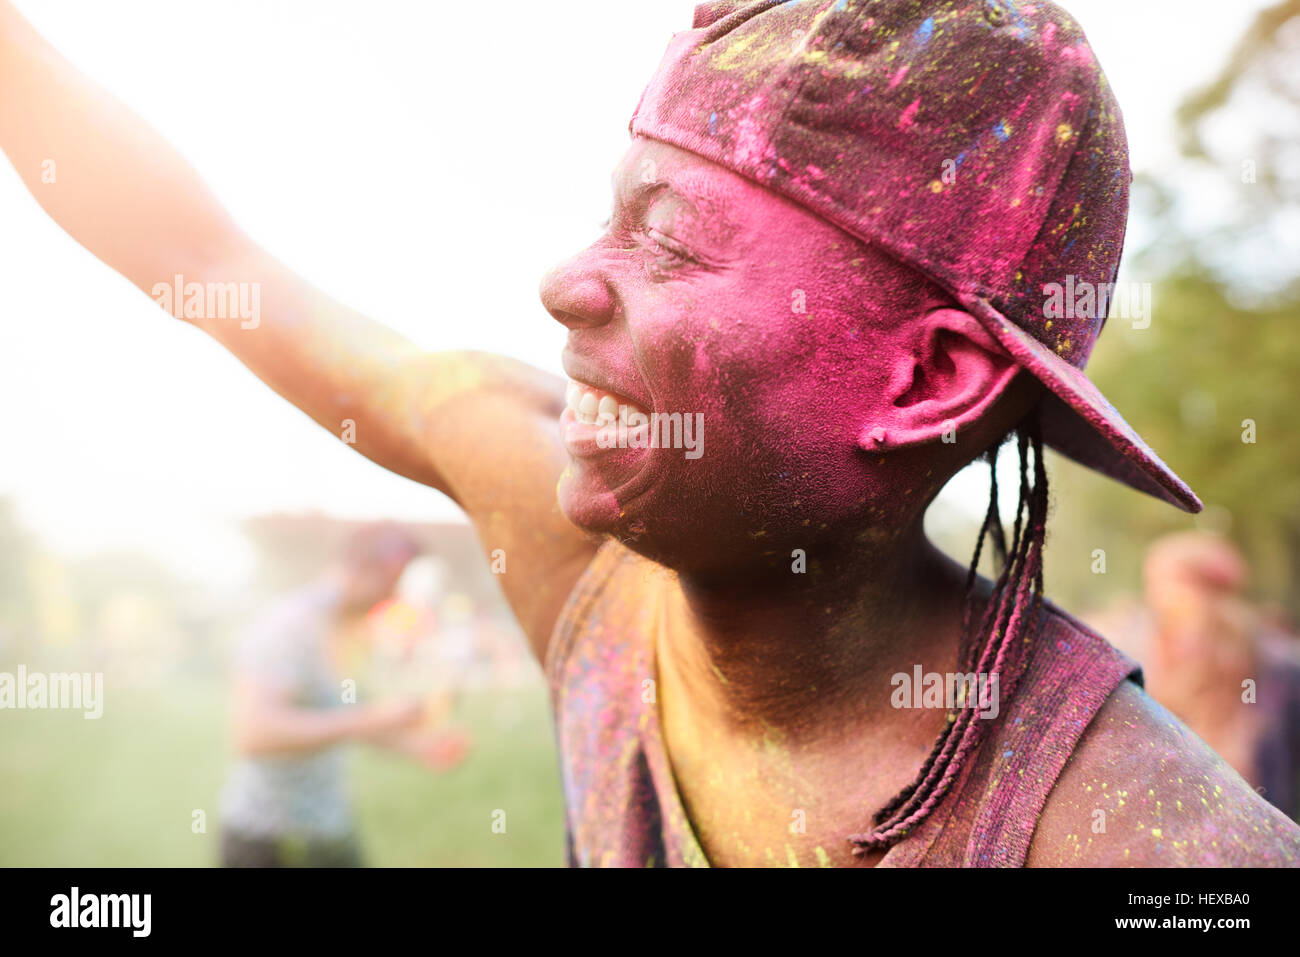 Giovane uomo al festival, coperto di polvere colorata vernice, bracci sollevati, dancing Foto Stock